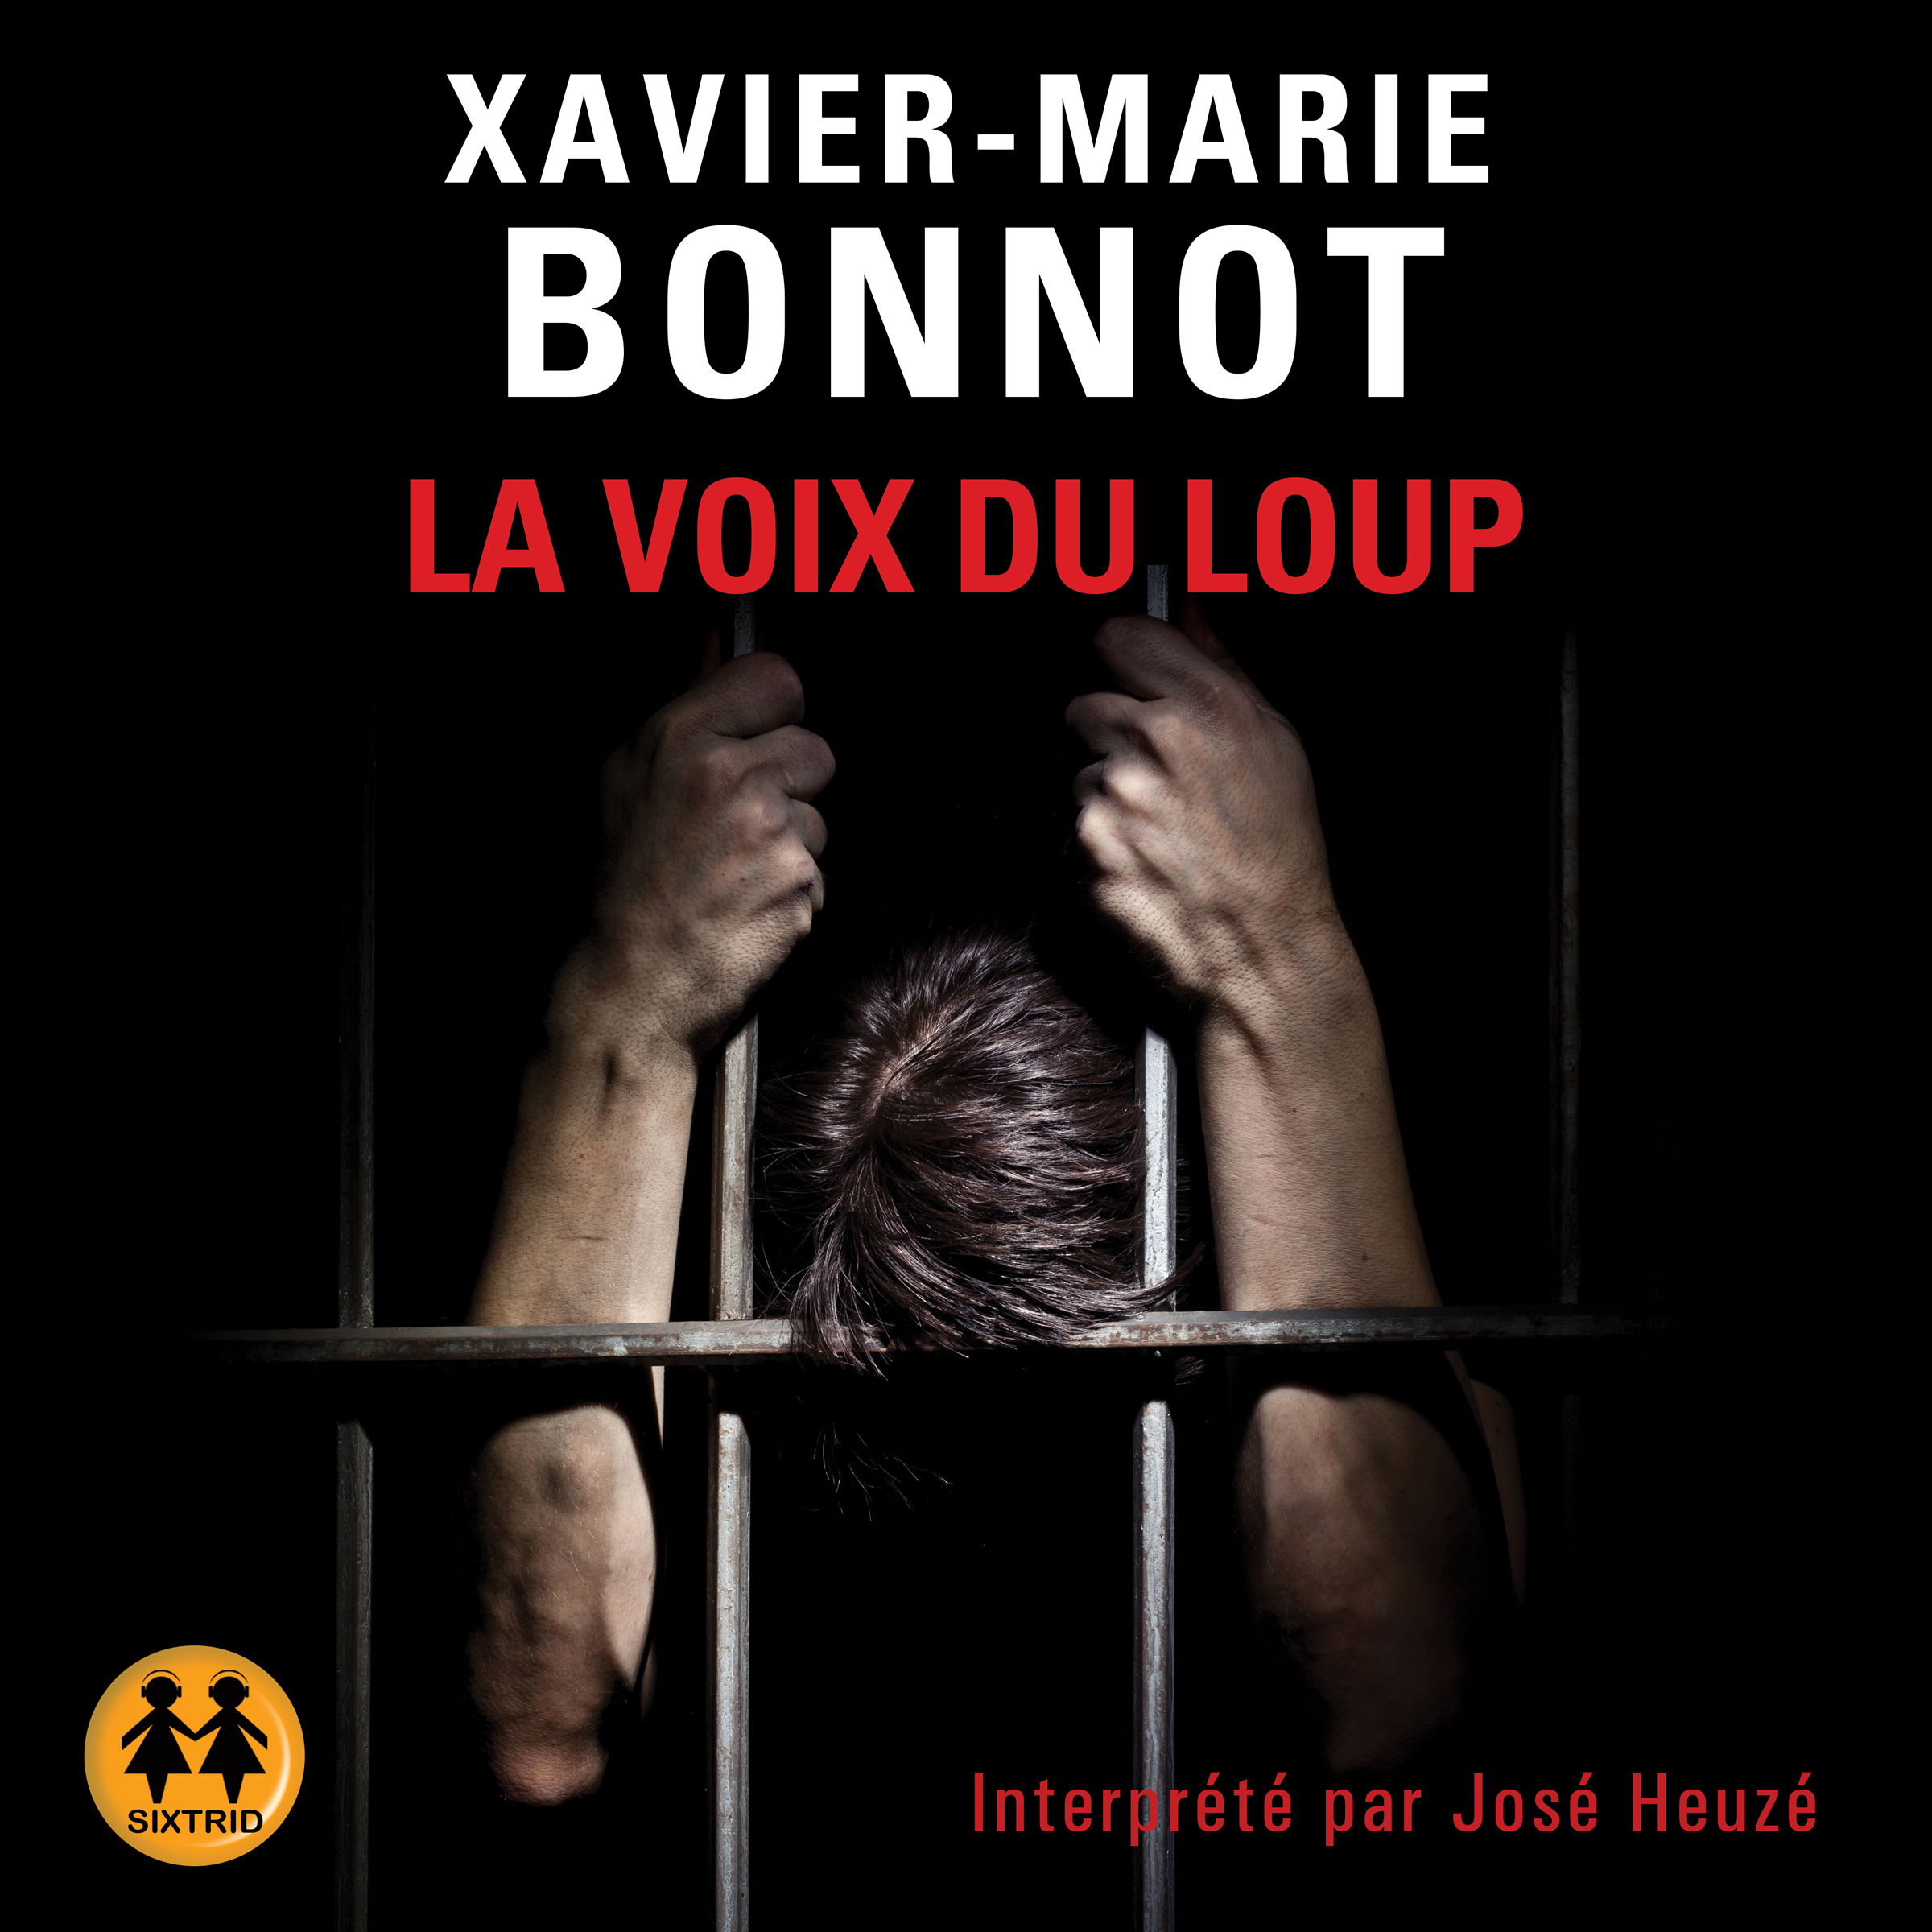 Couverture du livre audio La voix du loup De Xavier-Marie Bonnot 